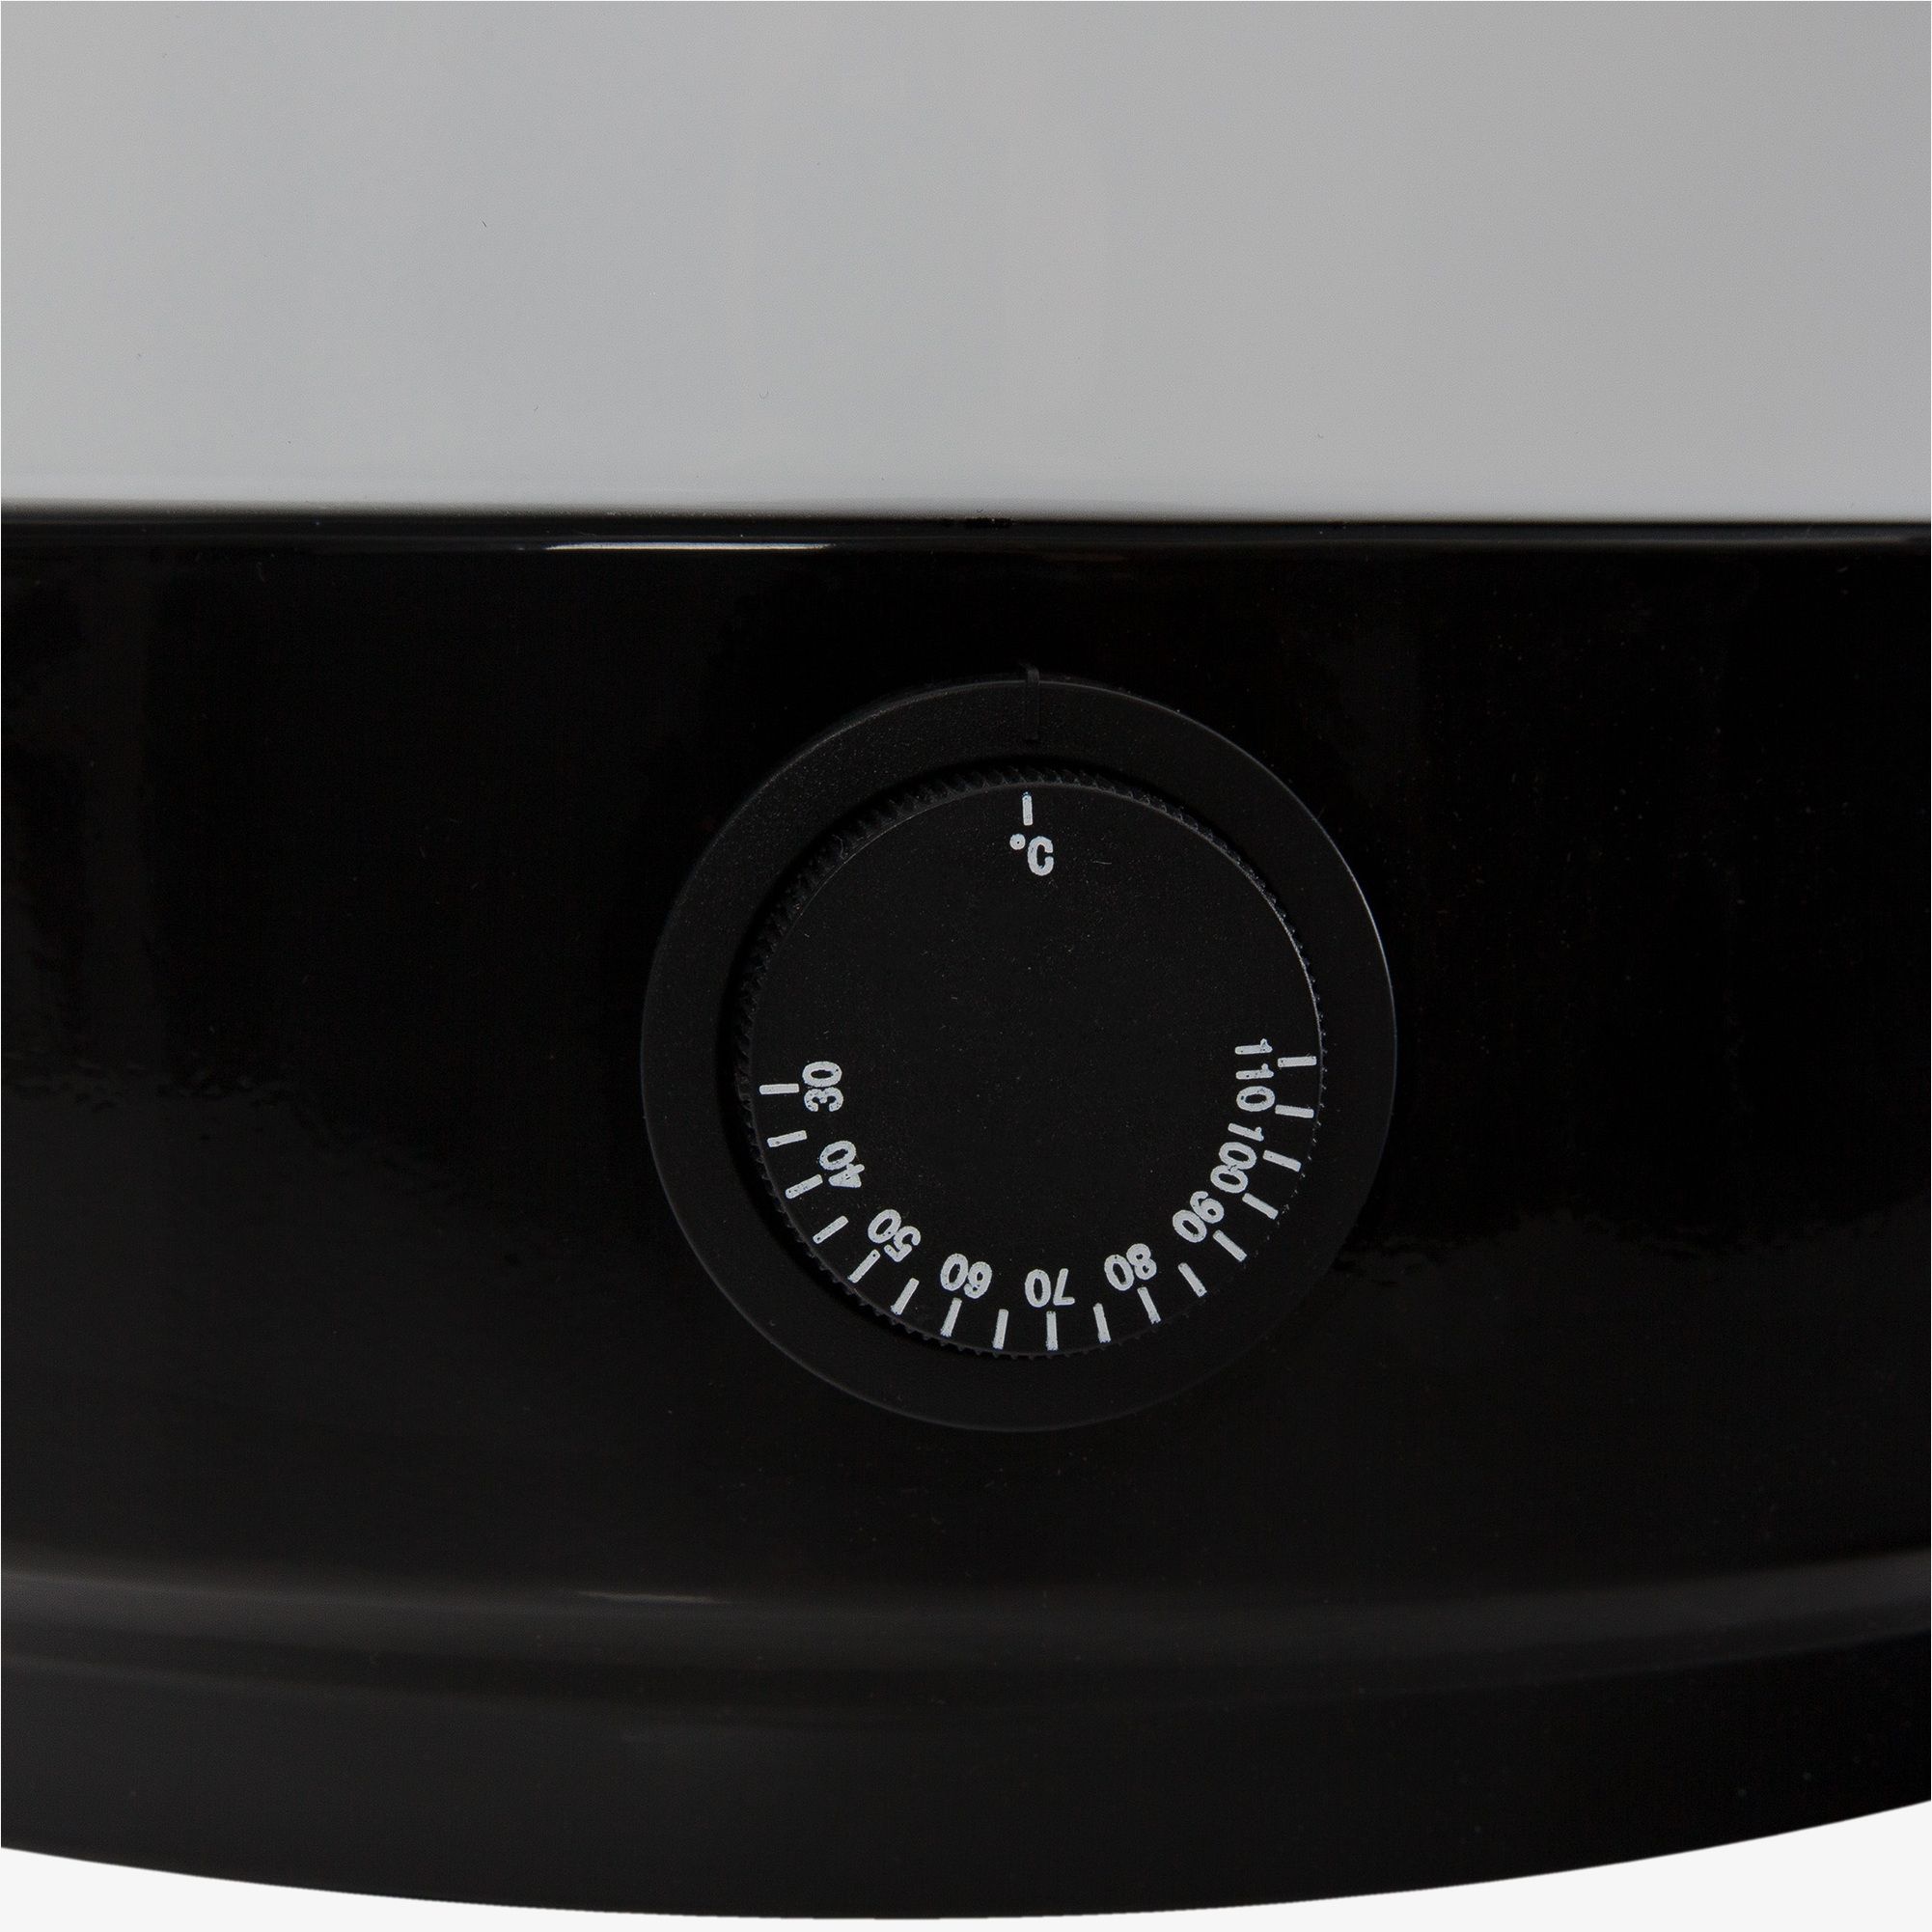 Arebos automātiskais konservators ar termostatu 28L 2500W (20087)